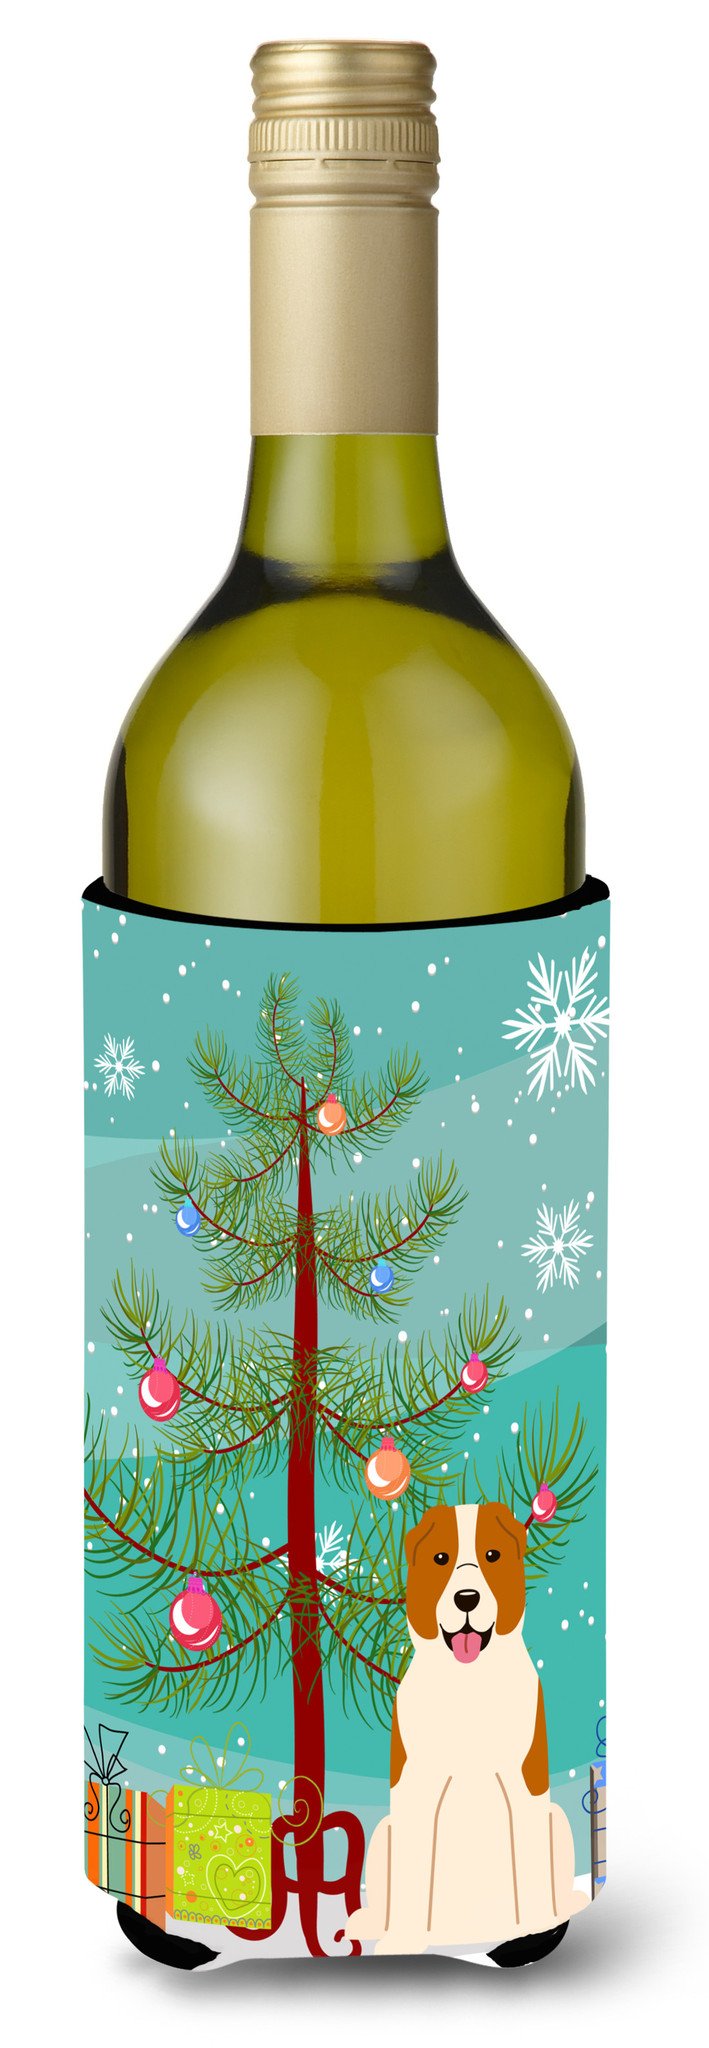 Merry Christmas Tree Central Asian Shepherd Dog Wine Bottle Beverge Insulator Hugger BB4174LITERK by Caroline's Treasures